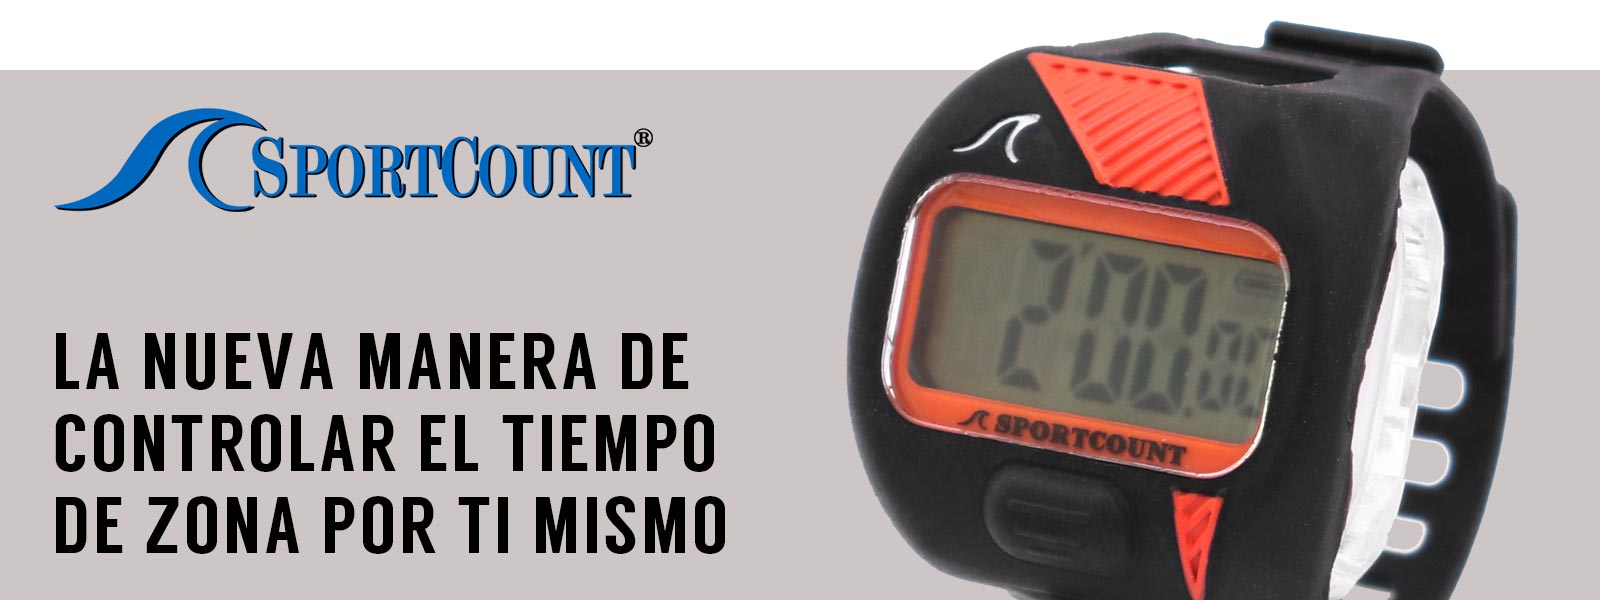 Reloj cuenta atrás Sportcount CDT para controlar tu tiempo en la zona de bici trial